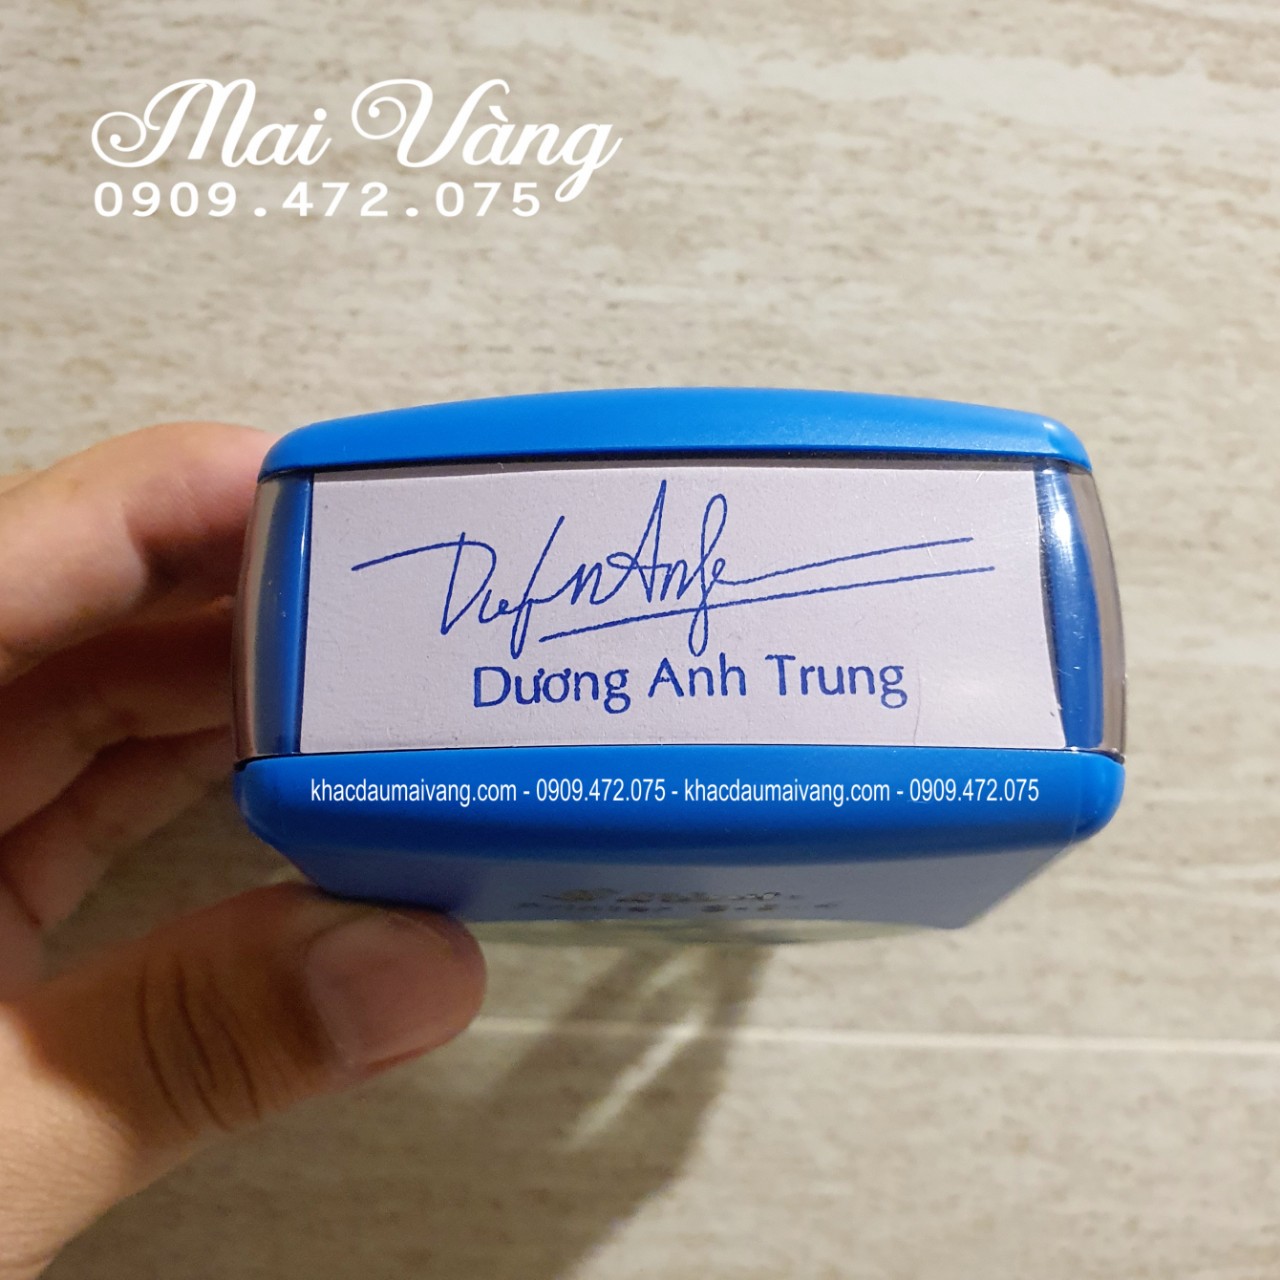 khắc dấu giá rẻ tại quận Tân Phú TP.HCM, nhận làm con dấu lấy liền giao hàng tận nơi